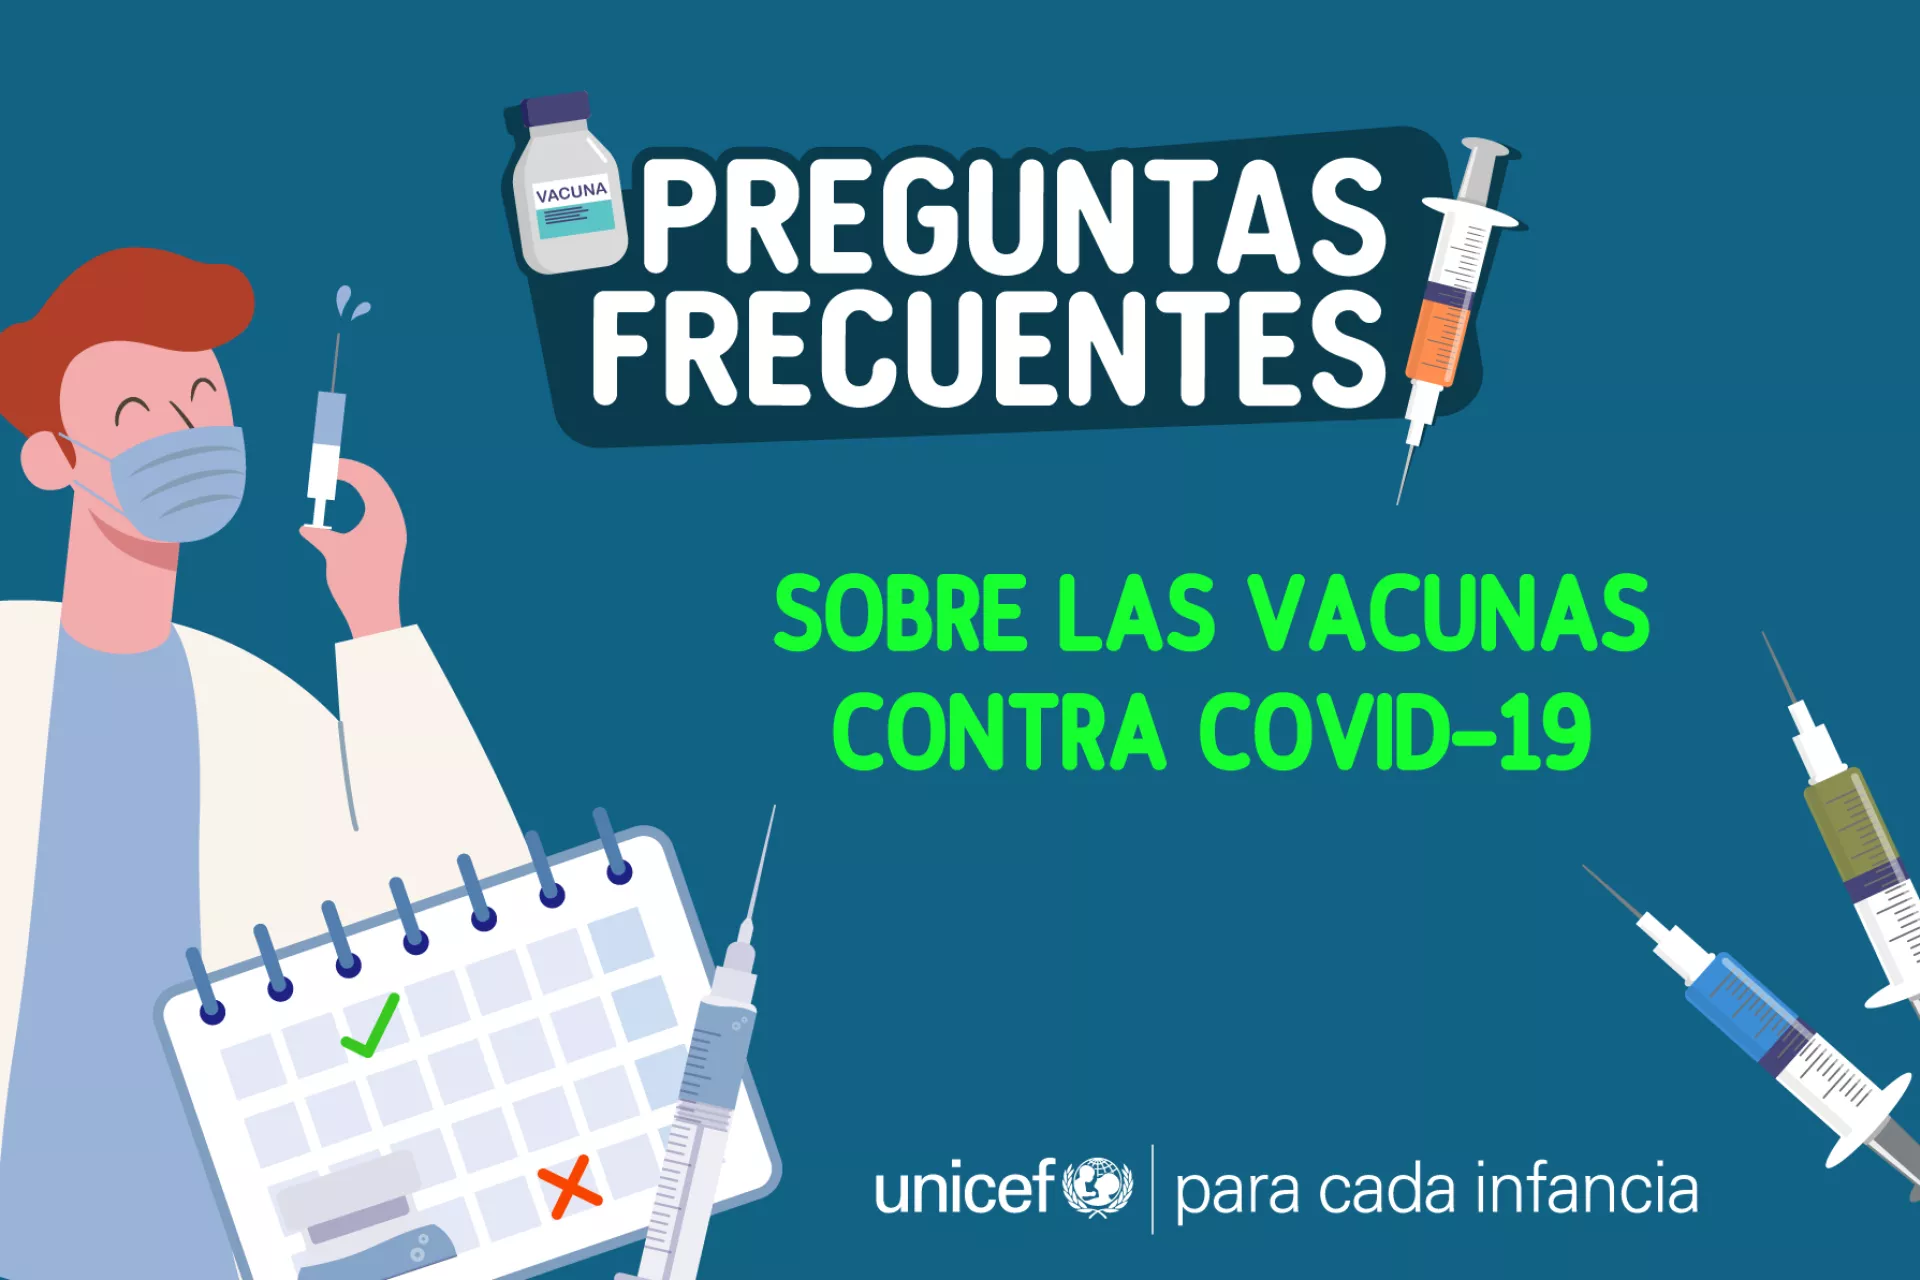 Información sobre Preguntas y Respuestas de las vacunas contra COVID-19